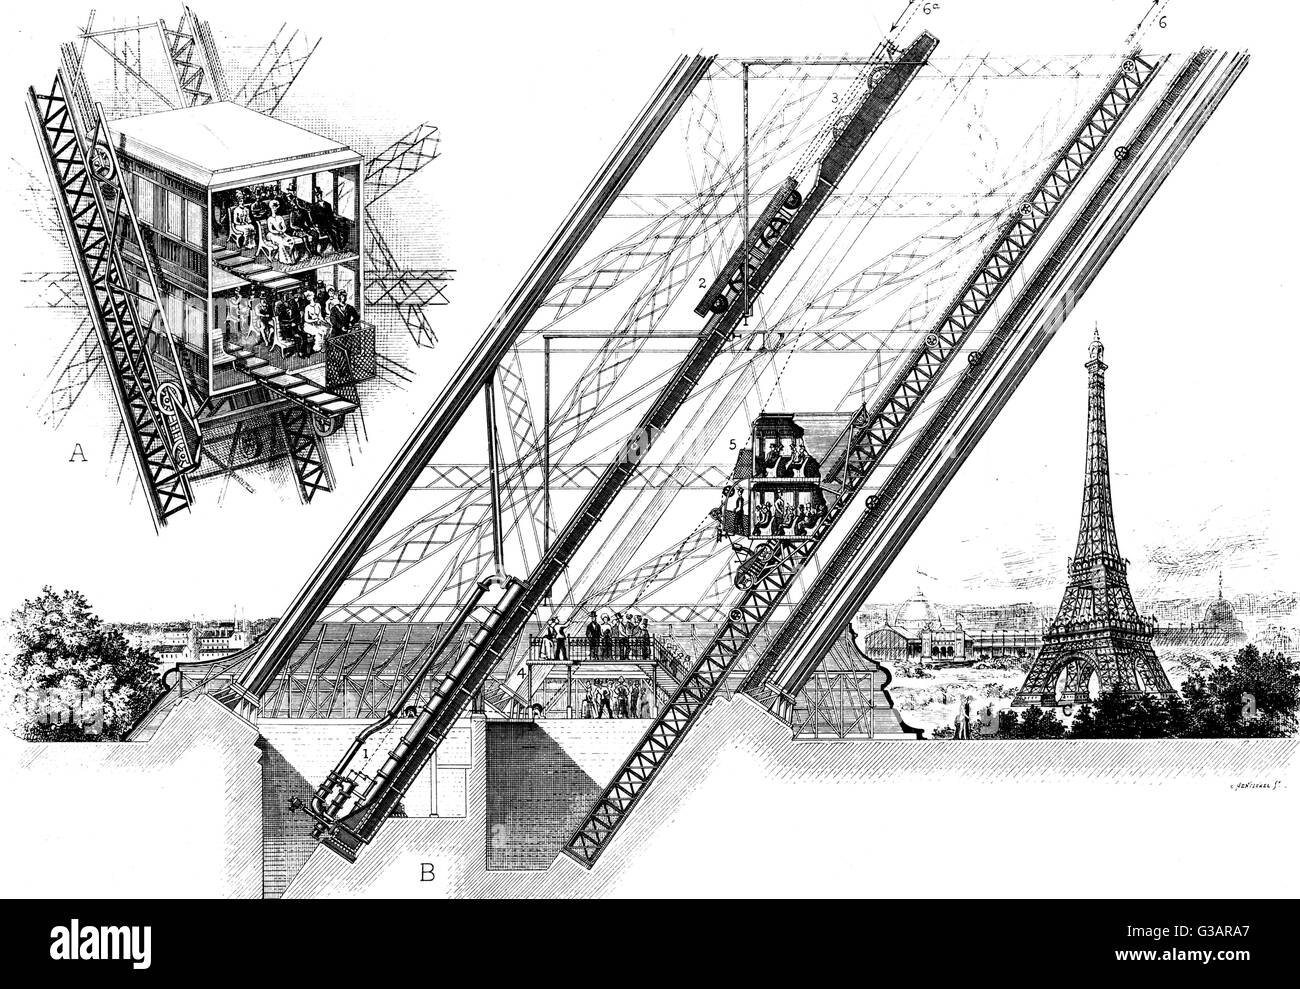 Parigi, Francia - La Tour Eiffel, Otis ascensori. La Otis ascensore nella Torre Eiffel, costruito dalla American ascensore azienda. prima vista mostra una vettura riempito con cinquanta passeggeri con la parte anteriore rimossa per mostrare l'interno. La figura B mostra una gamba di th Foto Stock